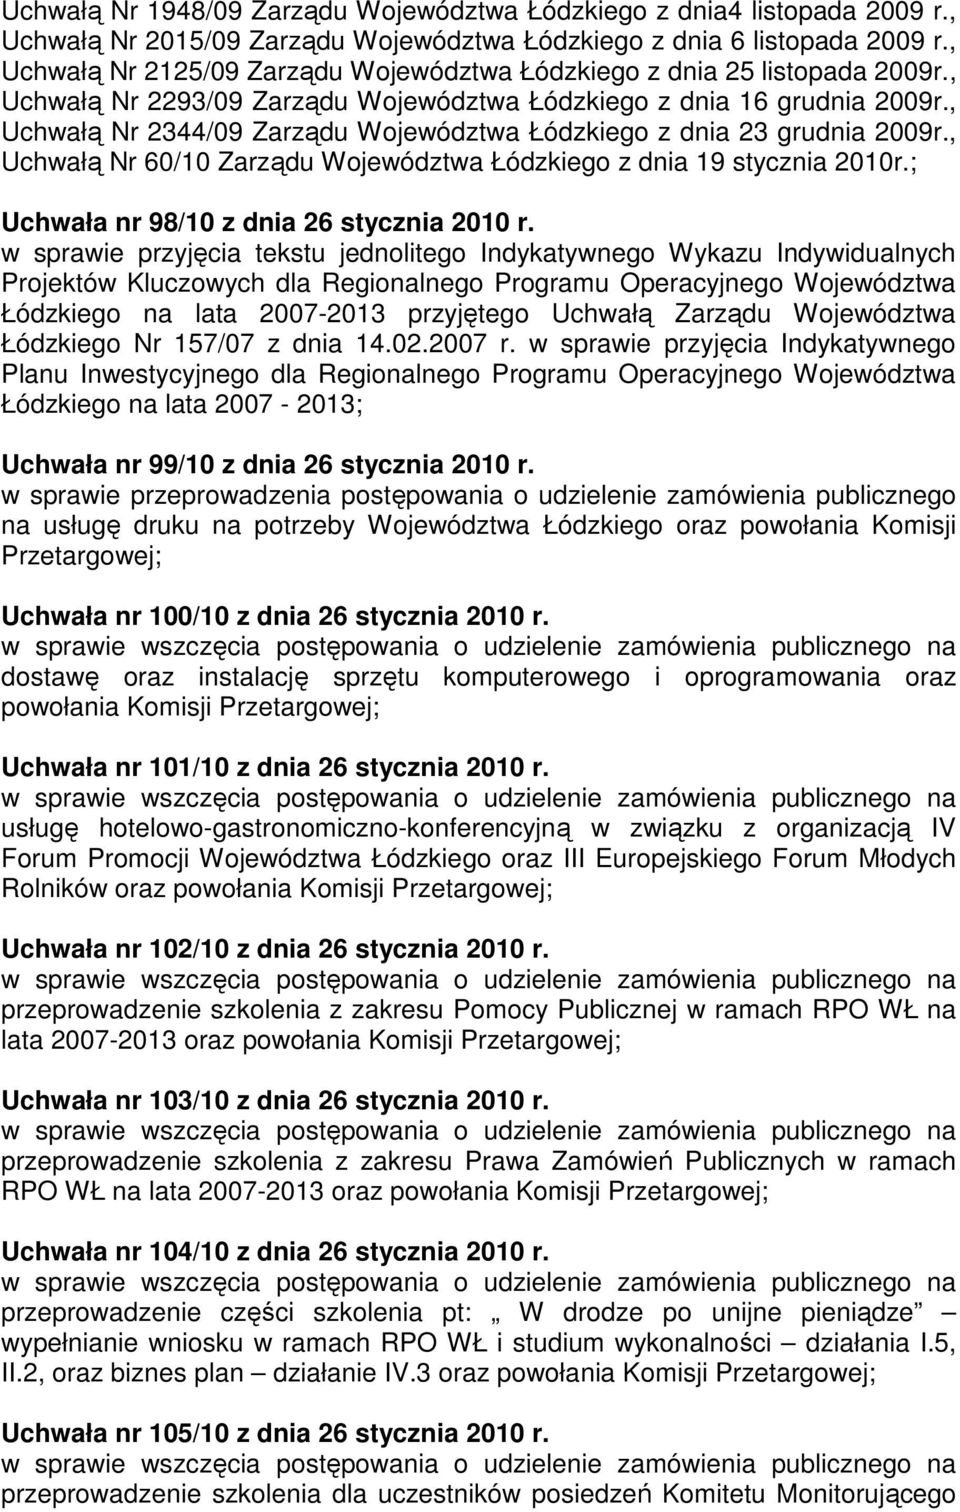 , Uchwałą Nr 2344/09 Zarządu Województwa Łódzkiego z dnia 23 grudnia 2009r., Uchwałą Nr 60/10 Zarządu Województwa Łódzkiego z dnia 19 stycznia 2010r.; Uchwała nr 98/10 z dnia 26 stycznia 2010 r.